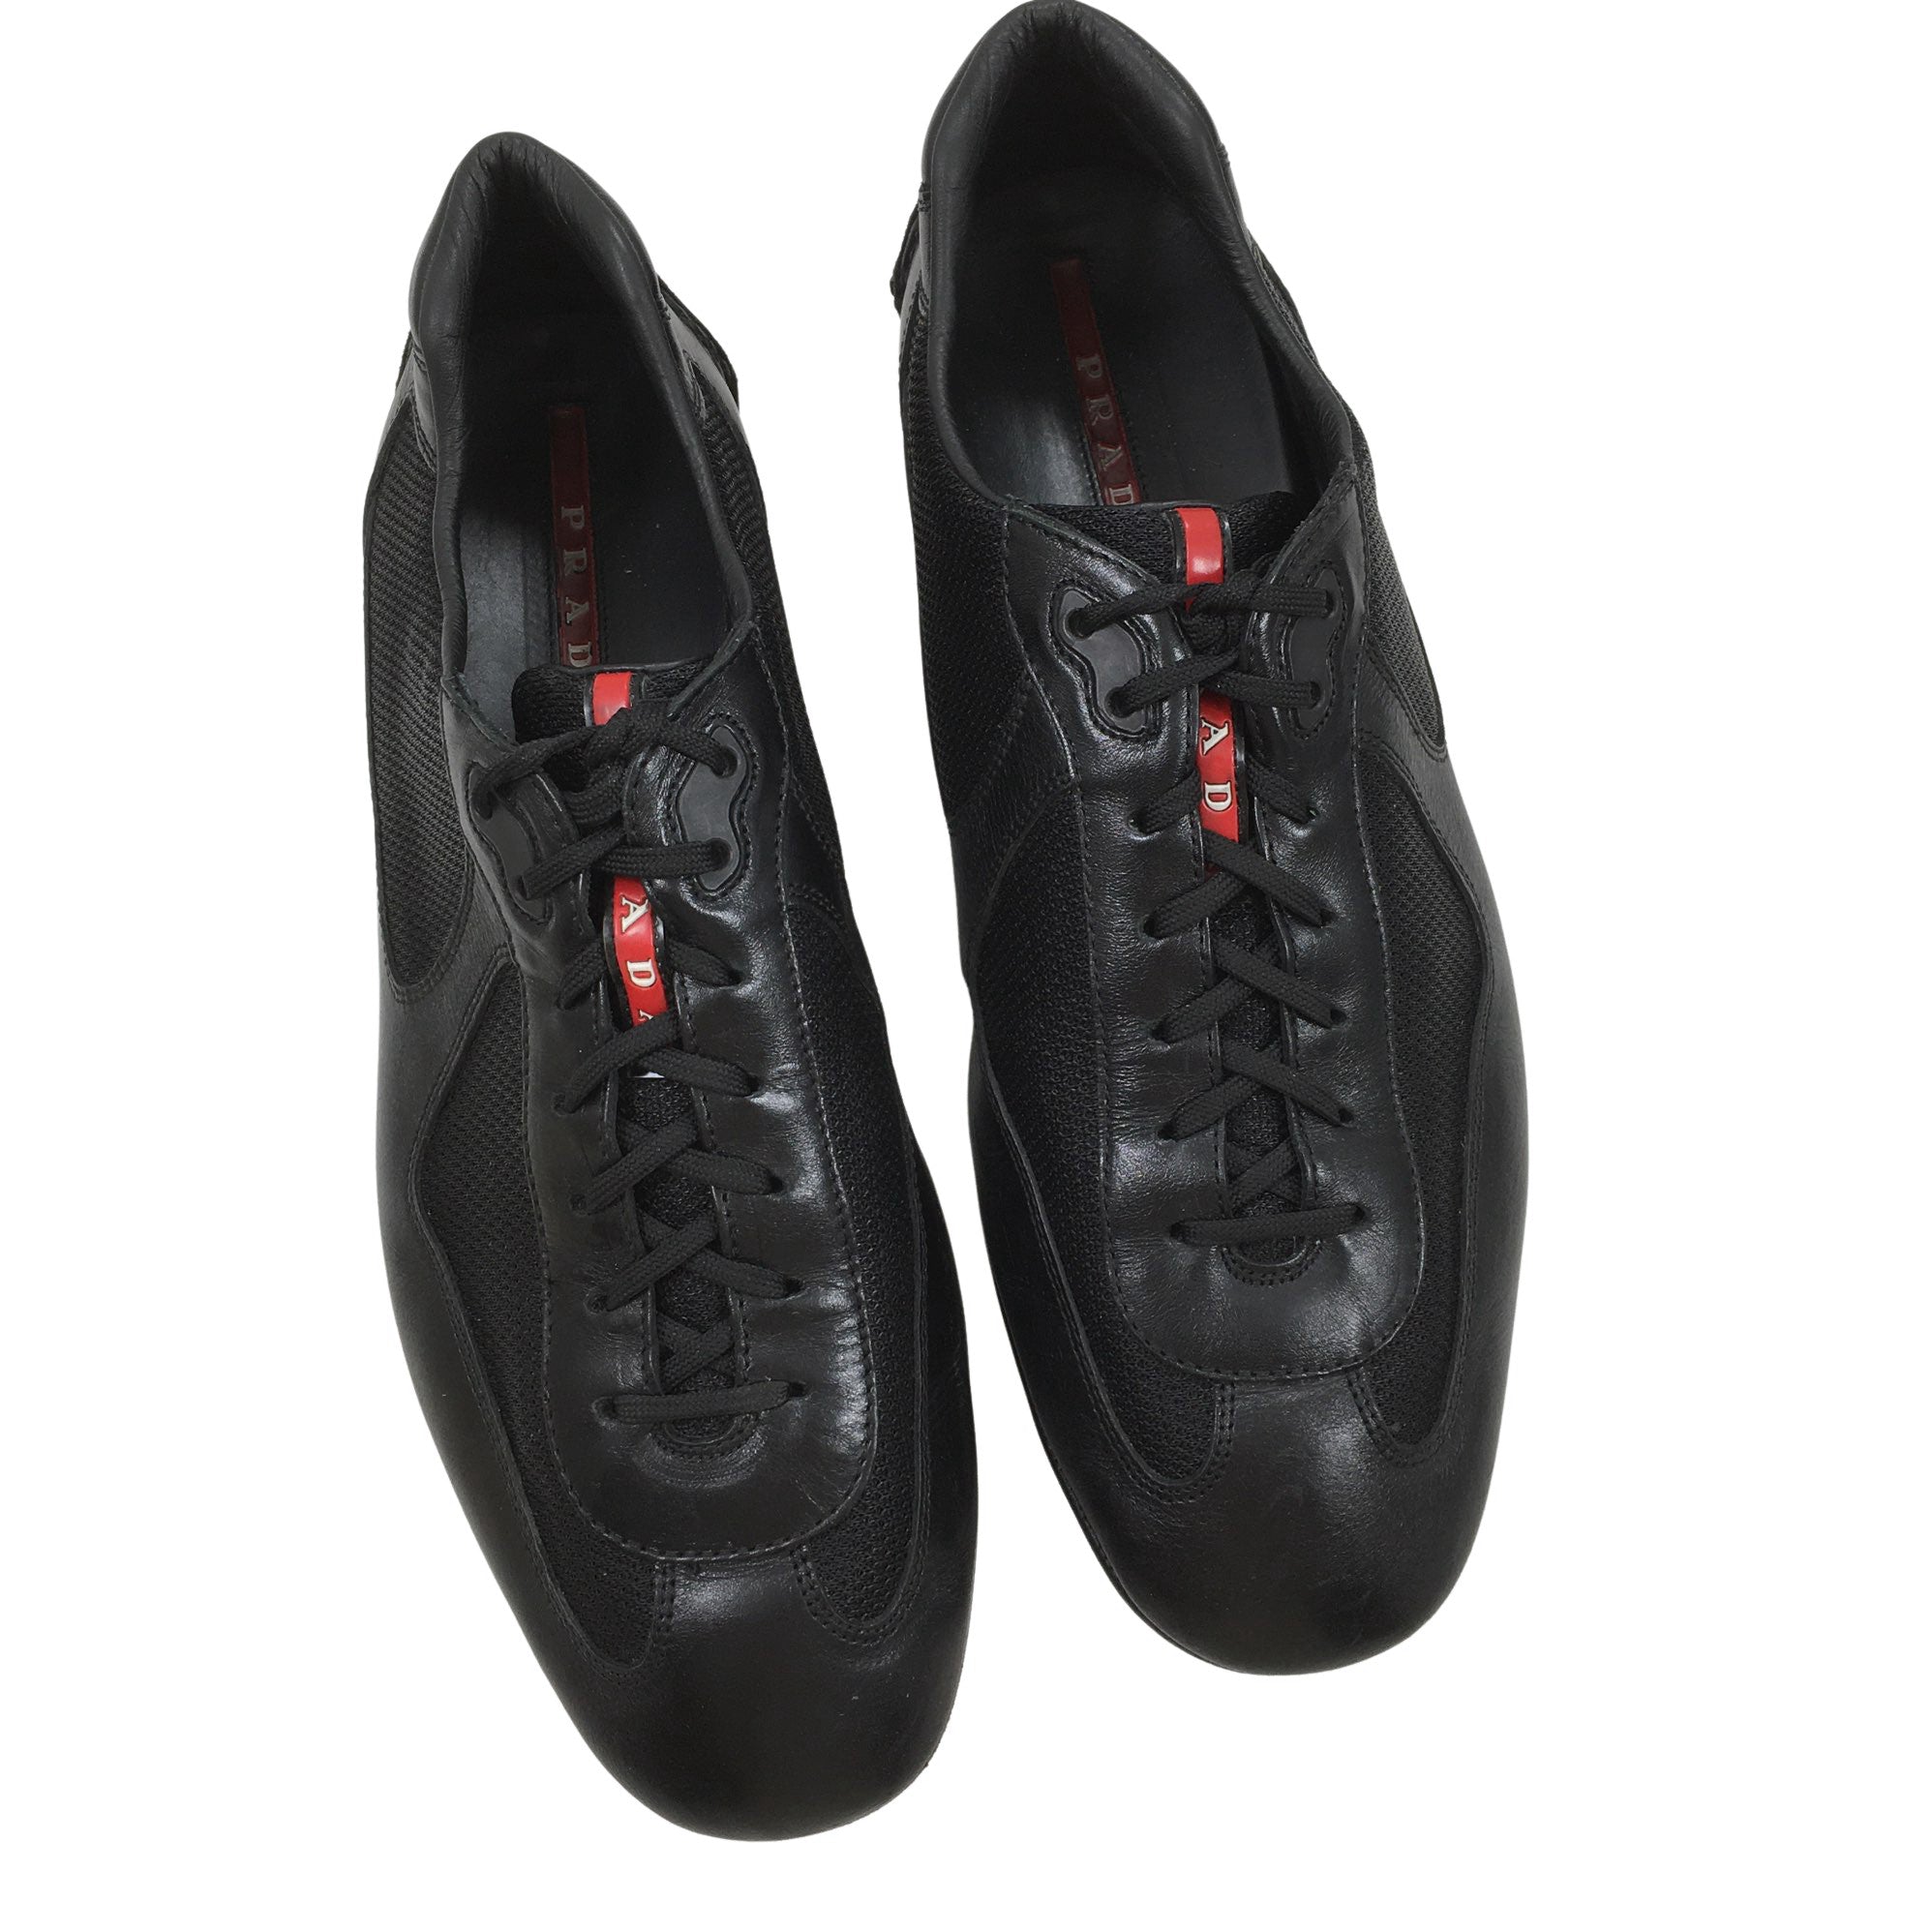 Prada Walking shoes – Size 45 (Men 